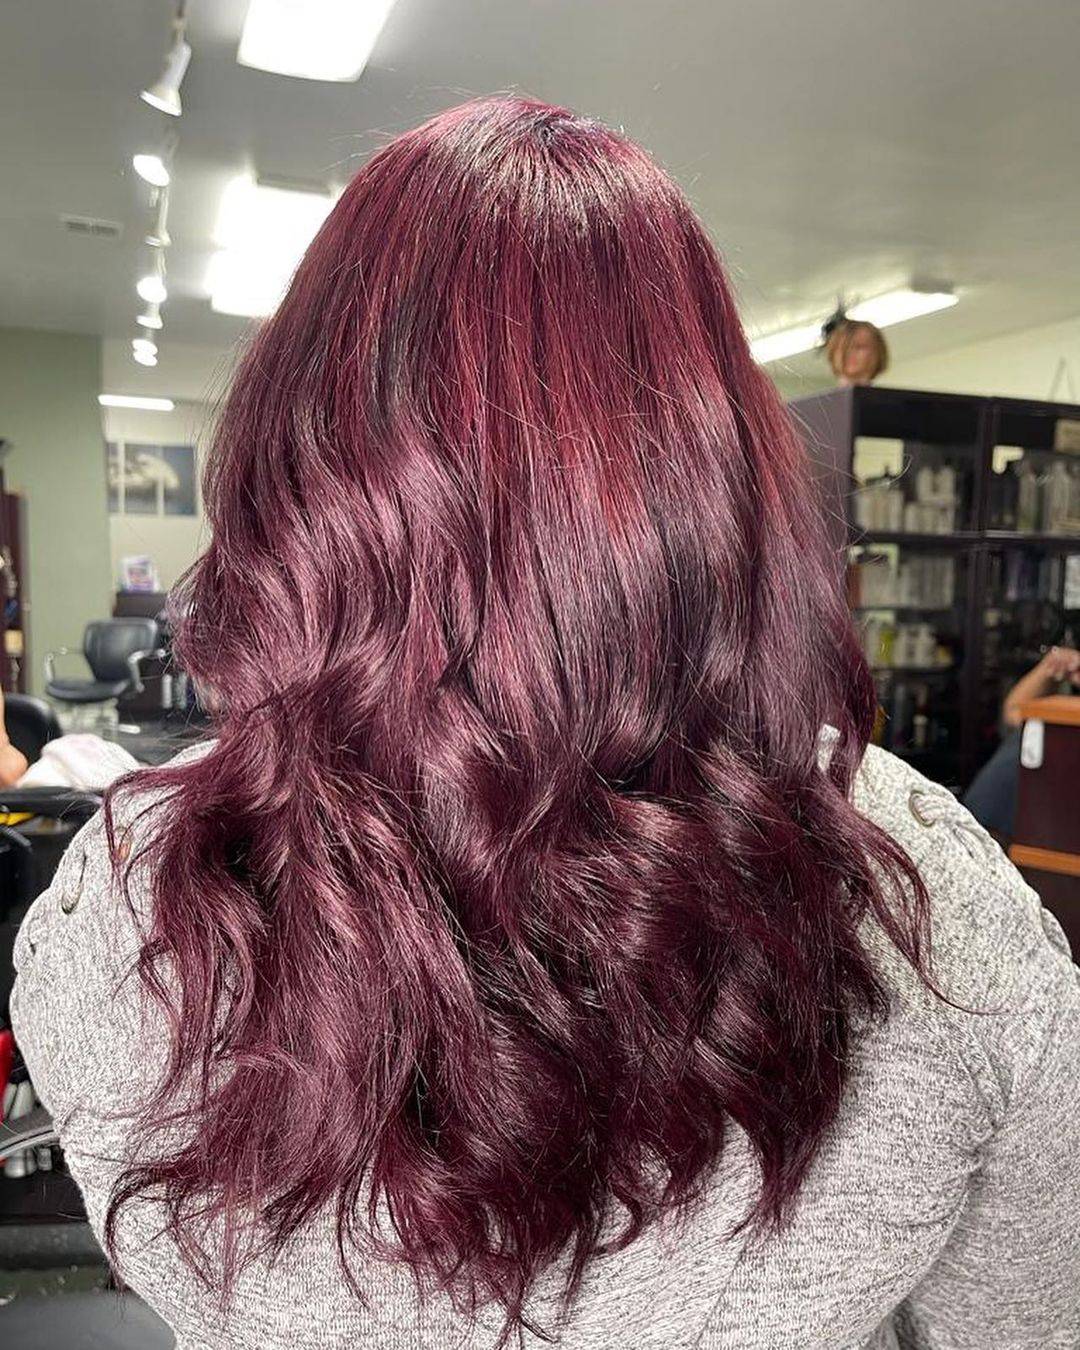 Burgundy hair color 214 burgundy hair color | burgundy hair color for women | burgundy hair color highlights Burgundy Hair Color